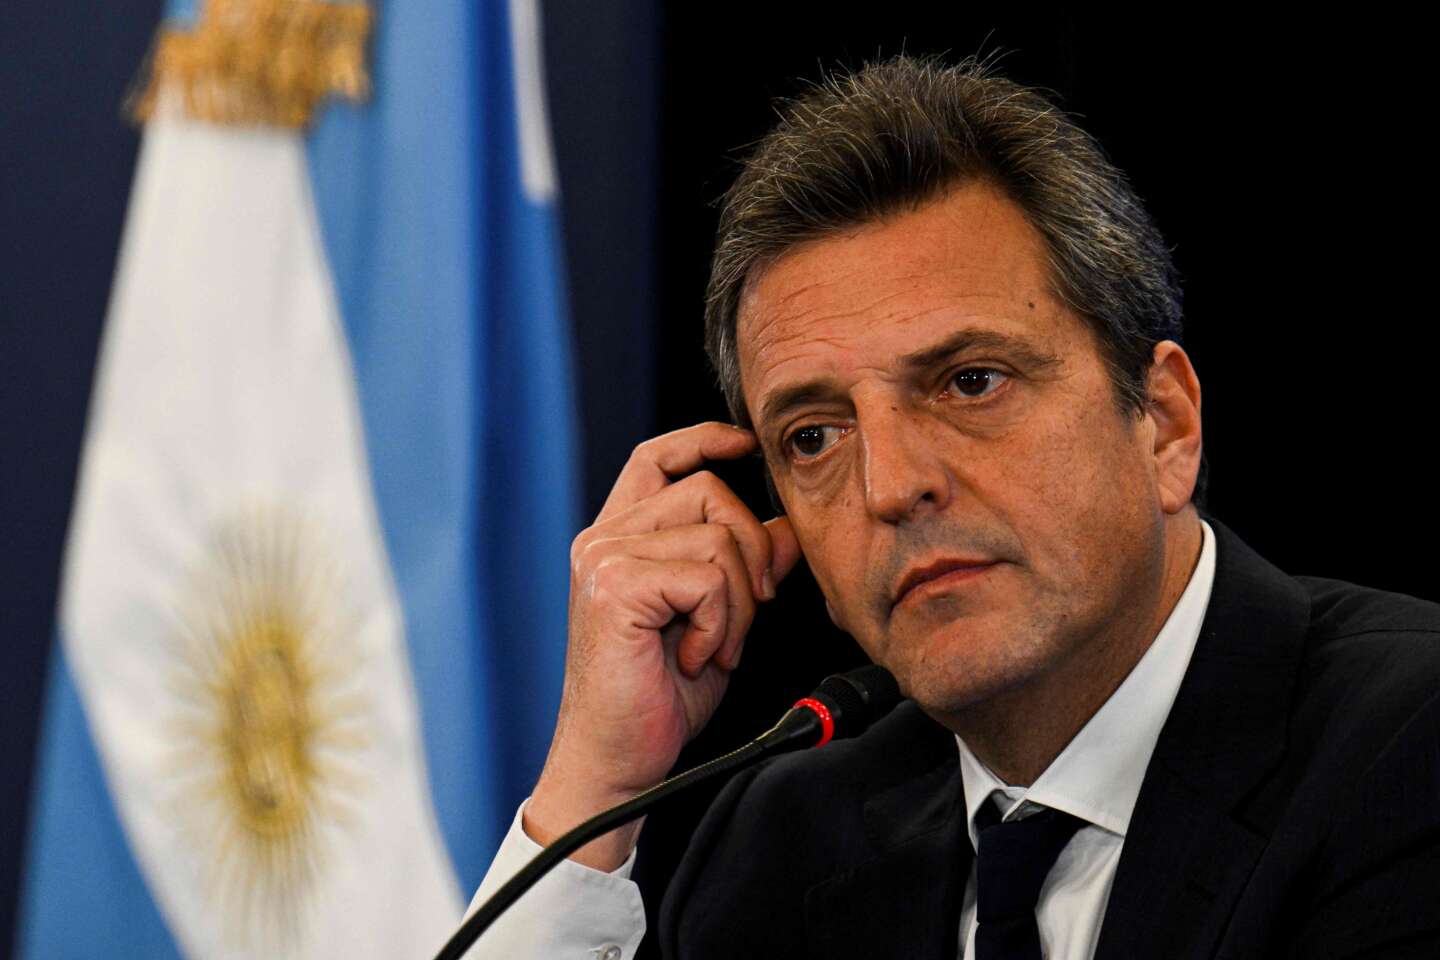 El ministro de Economía, Sergio Massa, será el candidato presidencial de la coalición oficialista